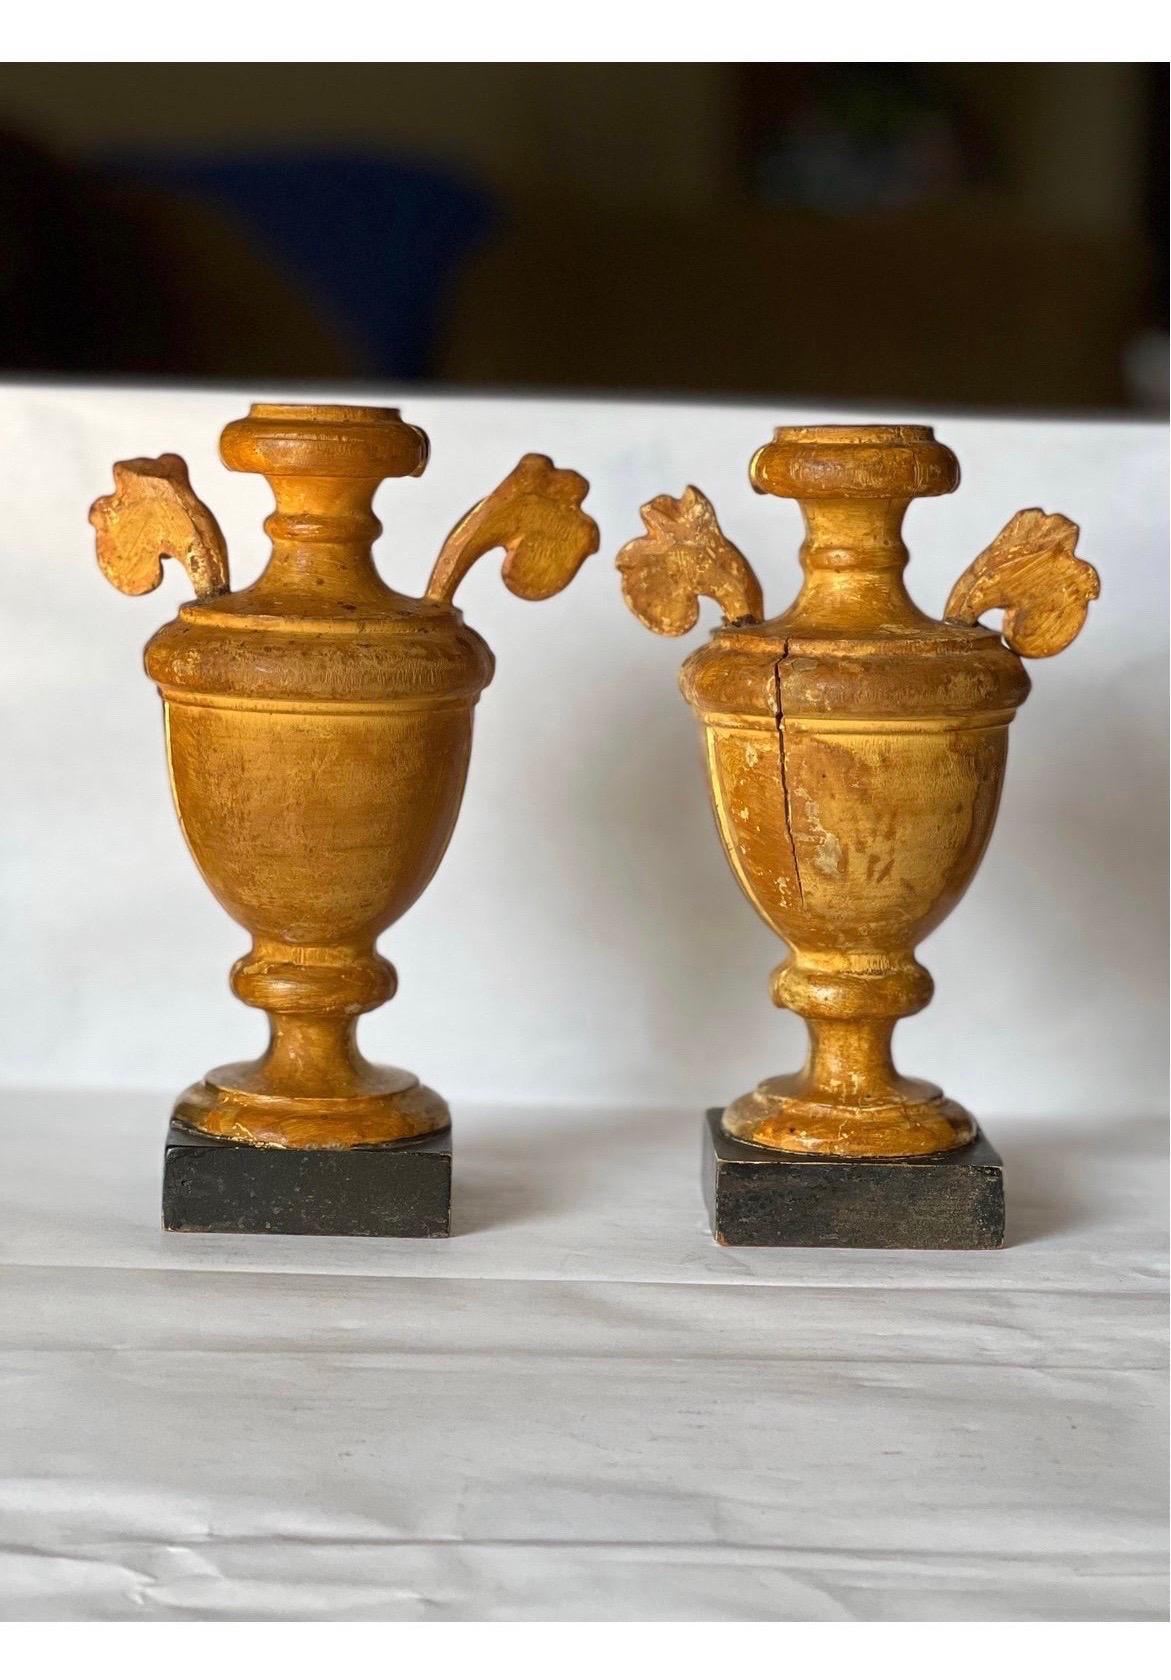 Une belle paire d'urnes ornementales italiennes en bois doré, probablement vers 1900, avec des corps sculptés et cannelés, des poignées feuillagées qui reposent sur des bases en faux marbre. Aucune marque. Dessus avec des trous - comme indiqué.